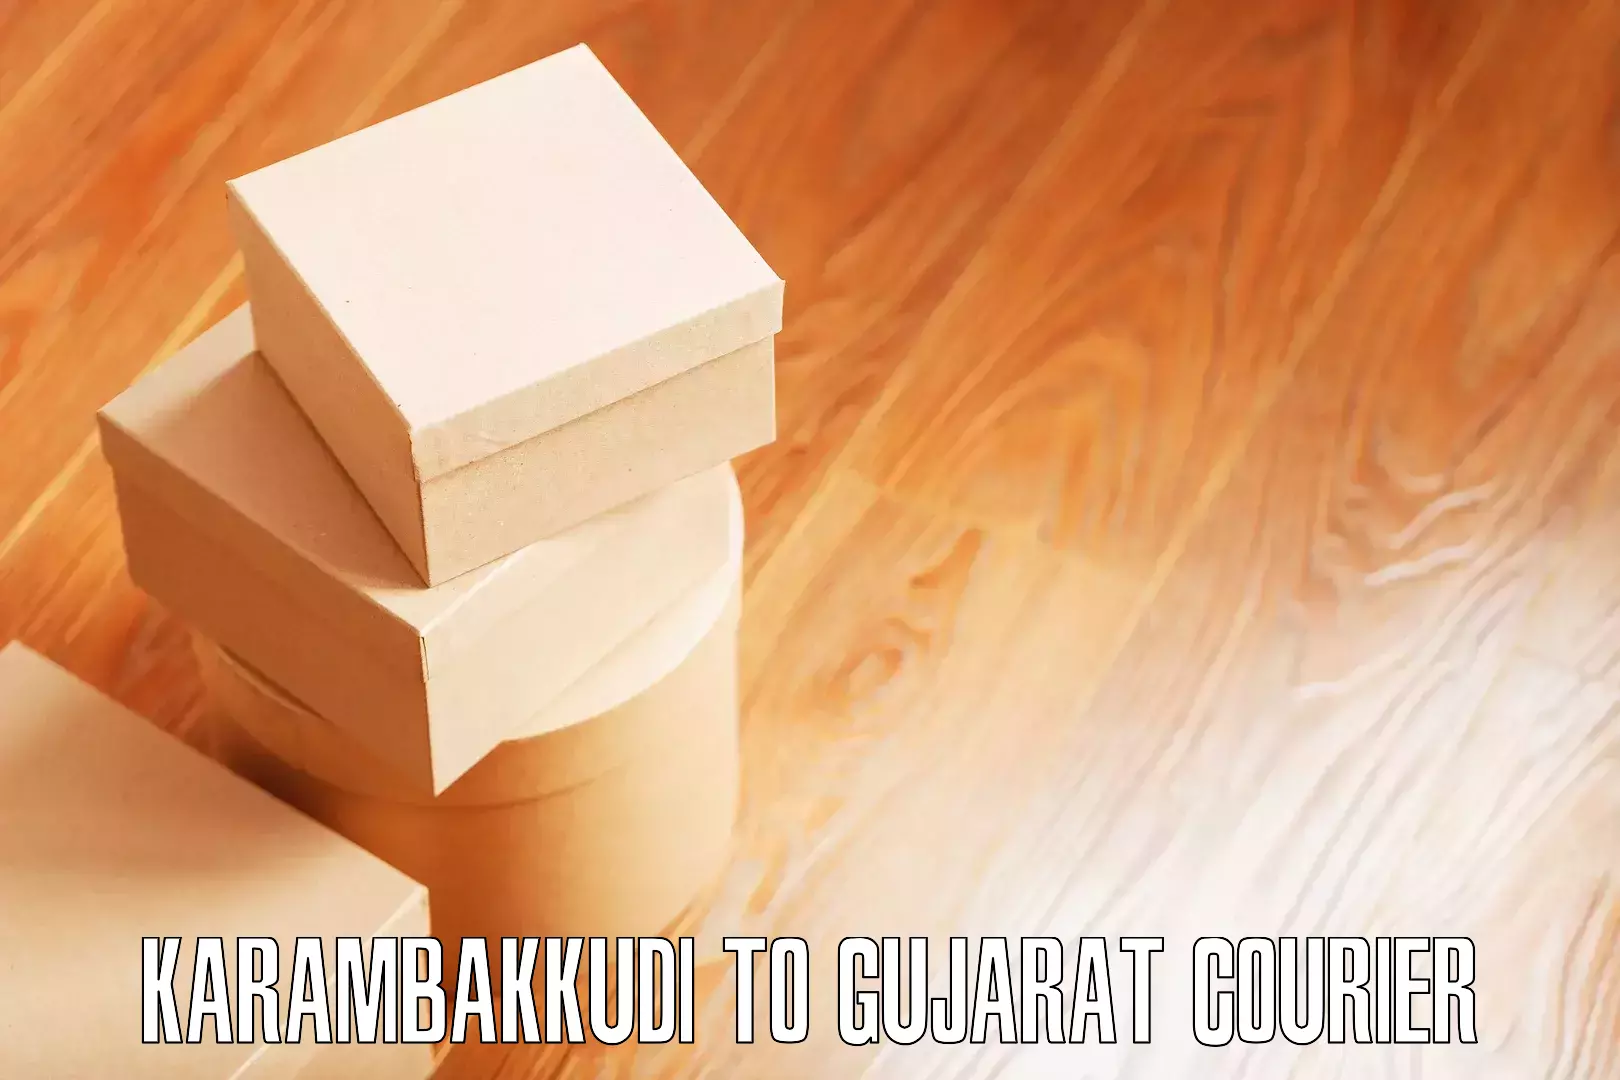 Moving and handling services Karambakkudi to Gujarat